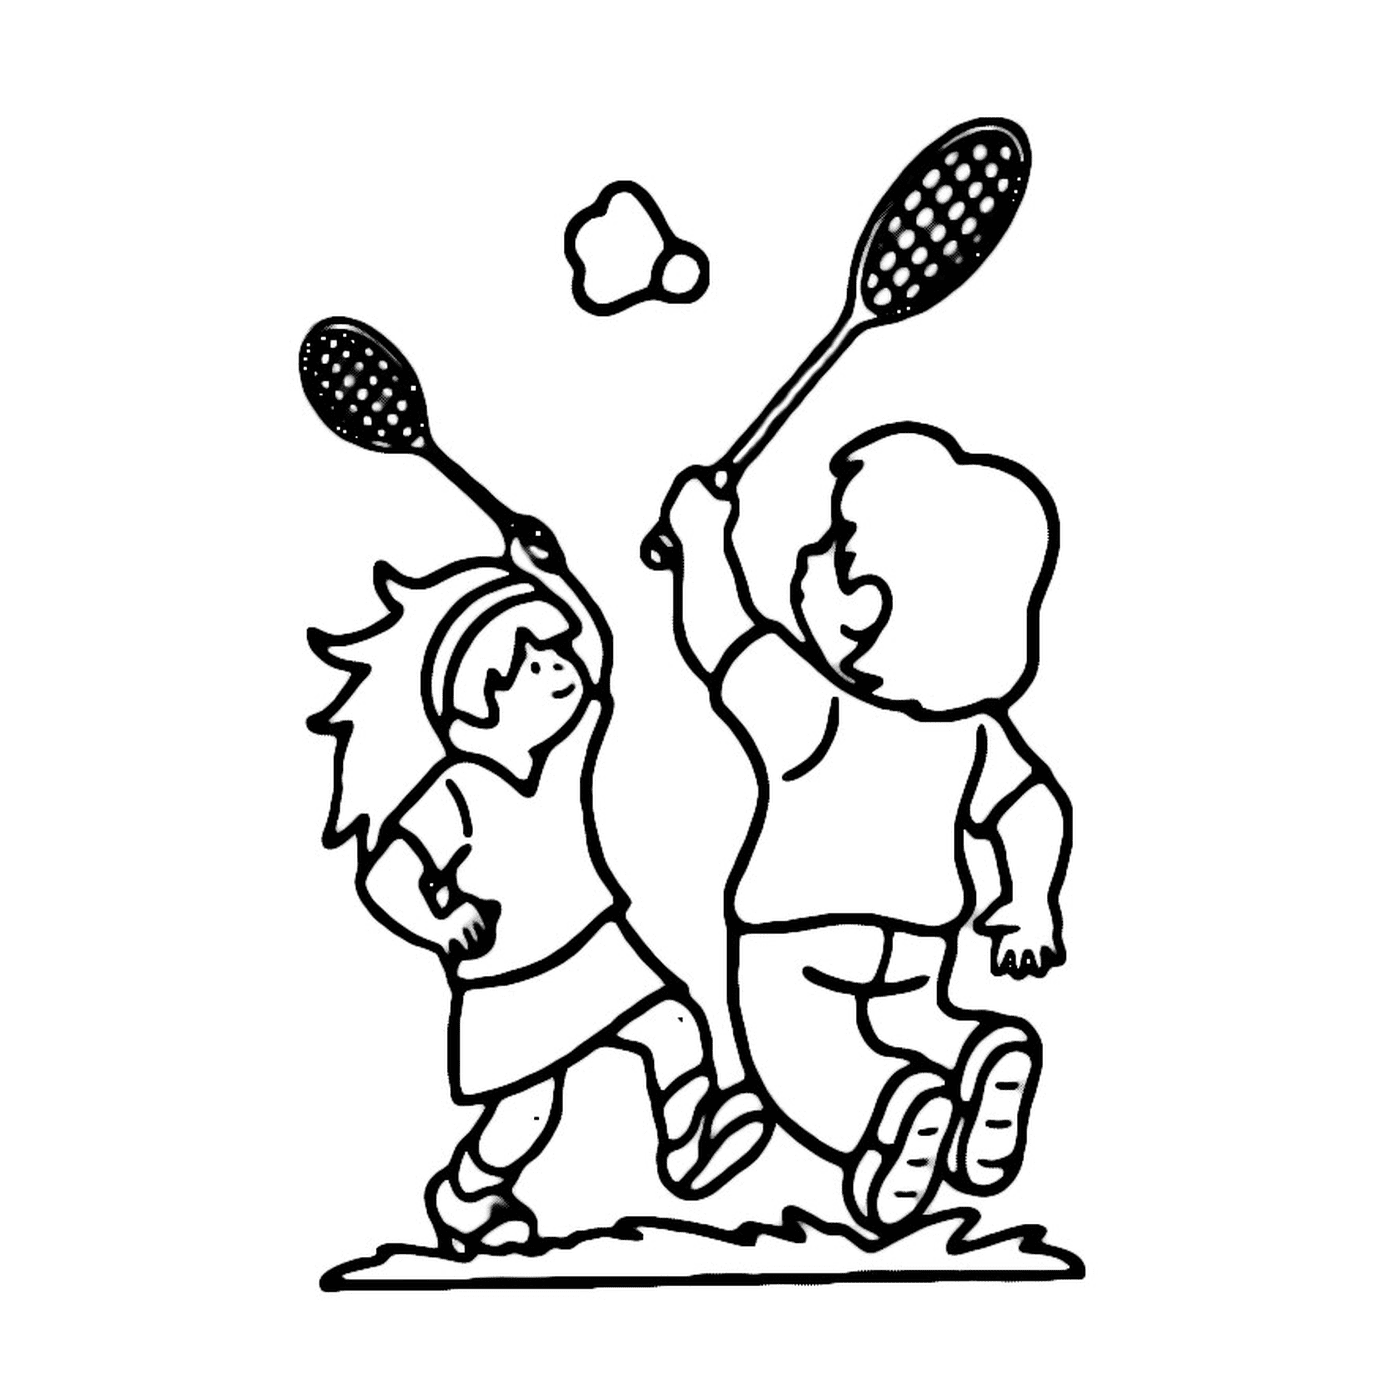  Zwei Kinder spielen Badminton auf einem Feld 